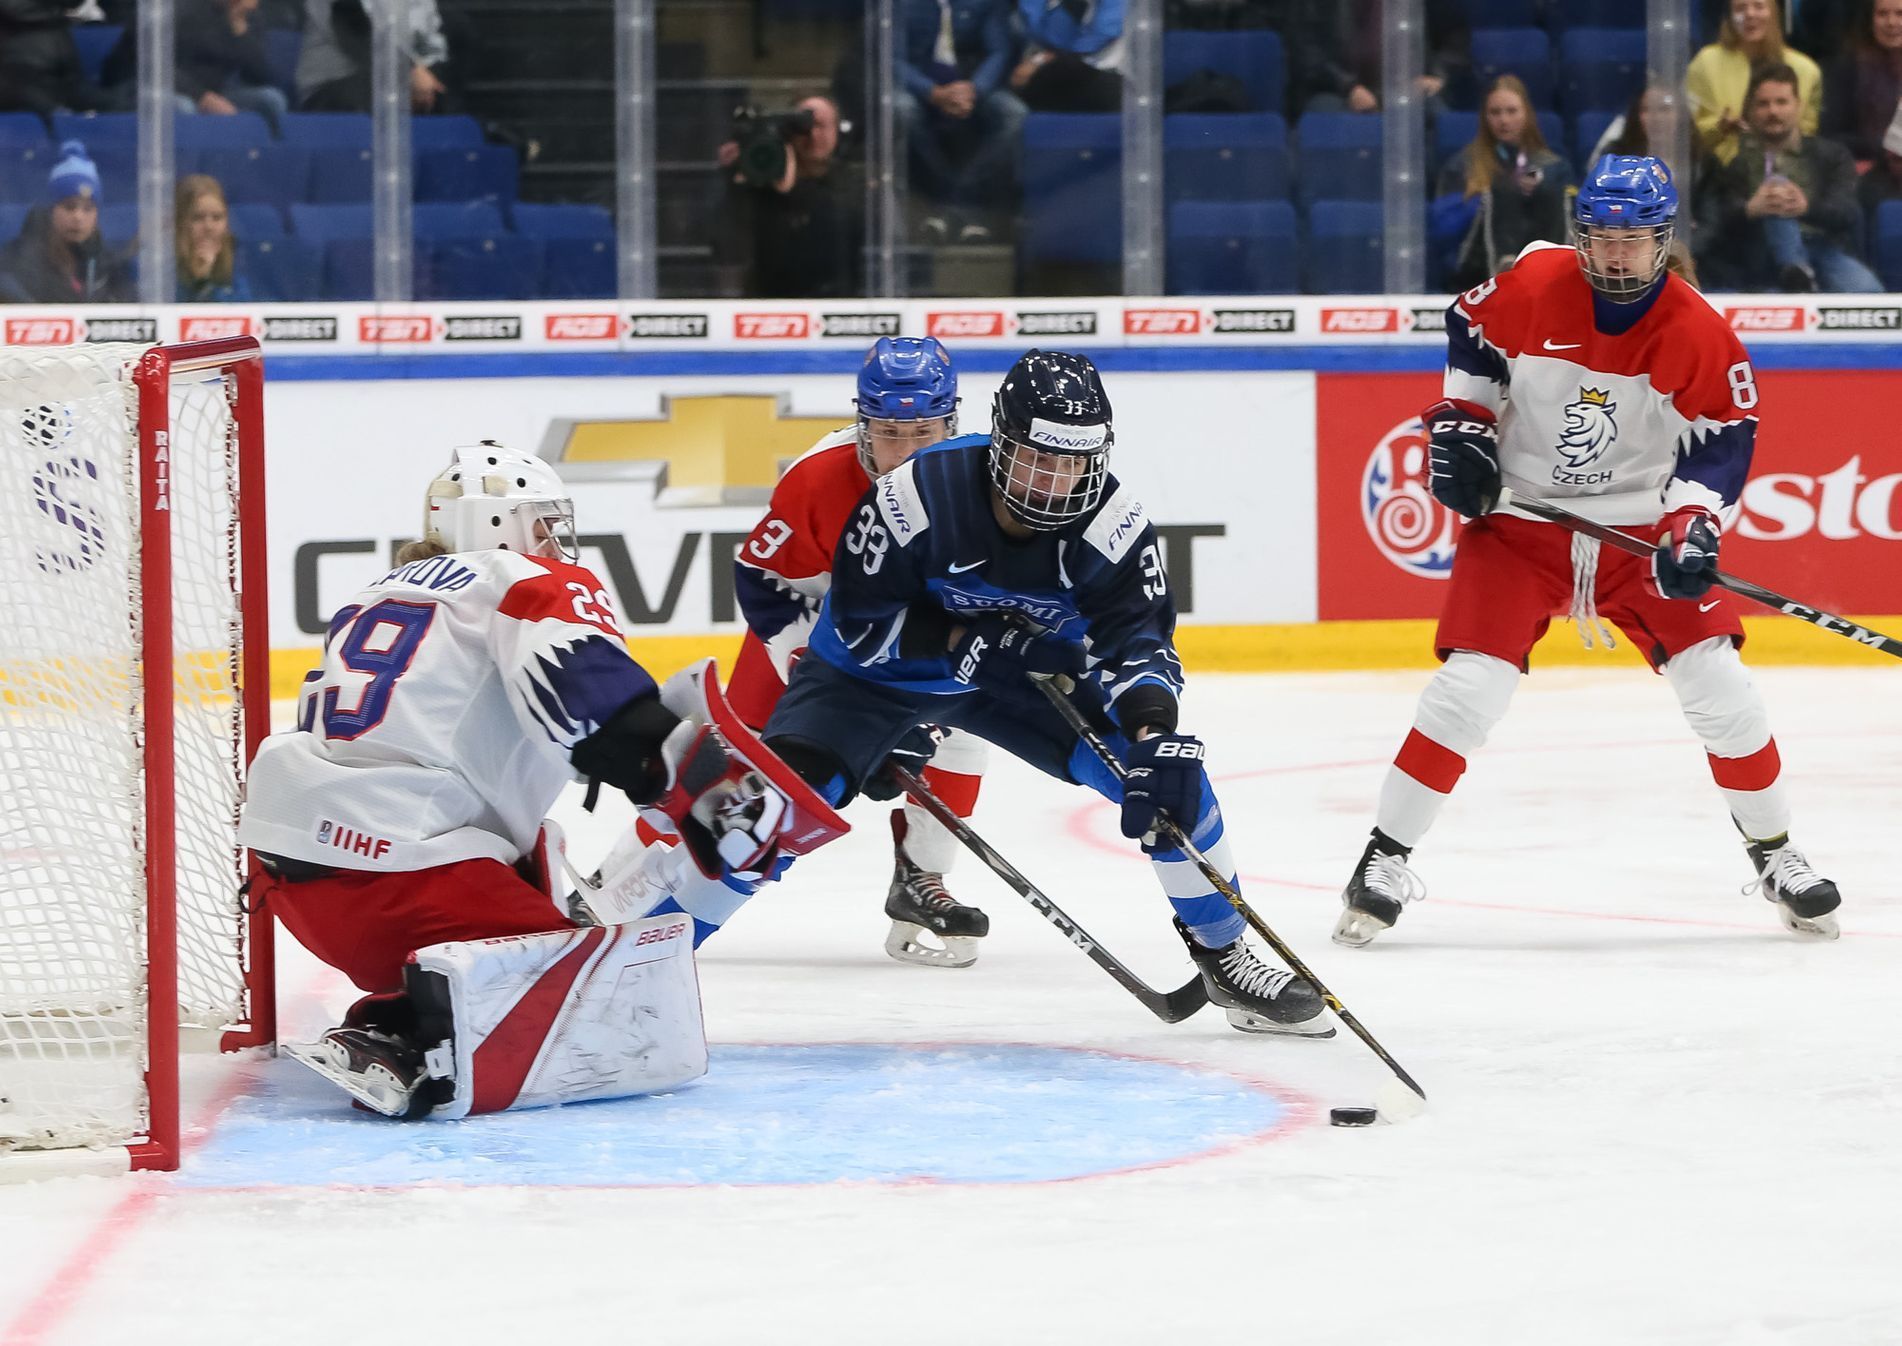 hokej, MS žen 2019, čtvrtfinále Česko - Finsko, Klára Peslarová čelí pokusu Michelle Karvinenové